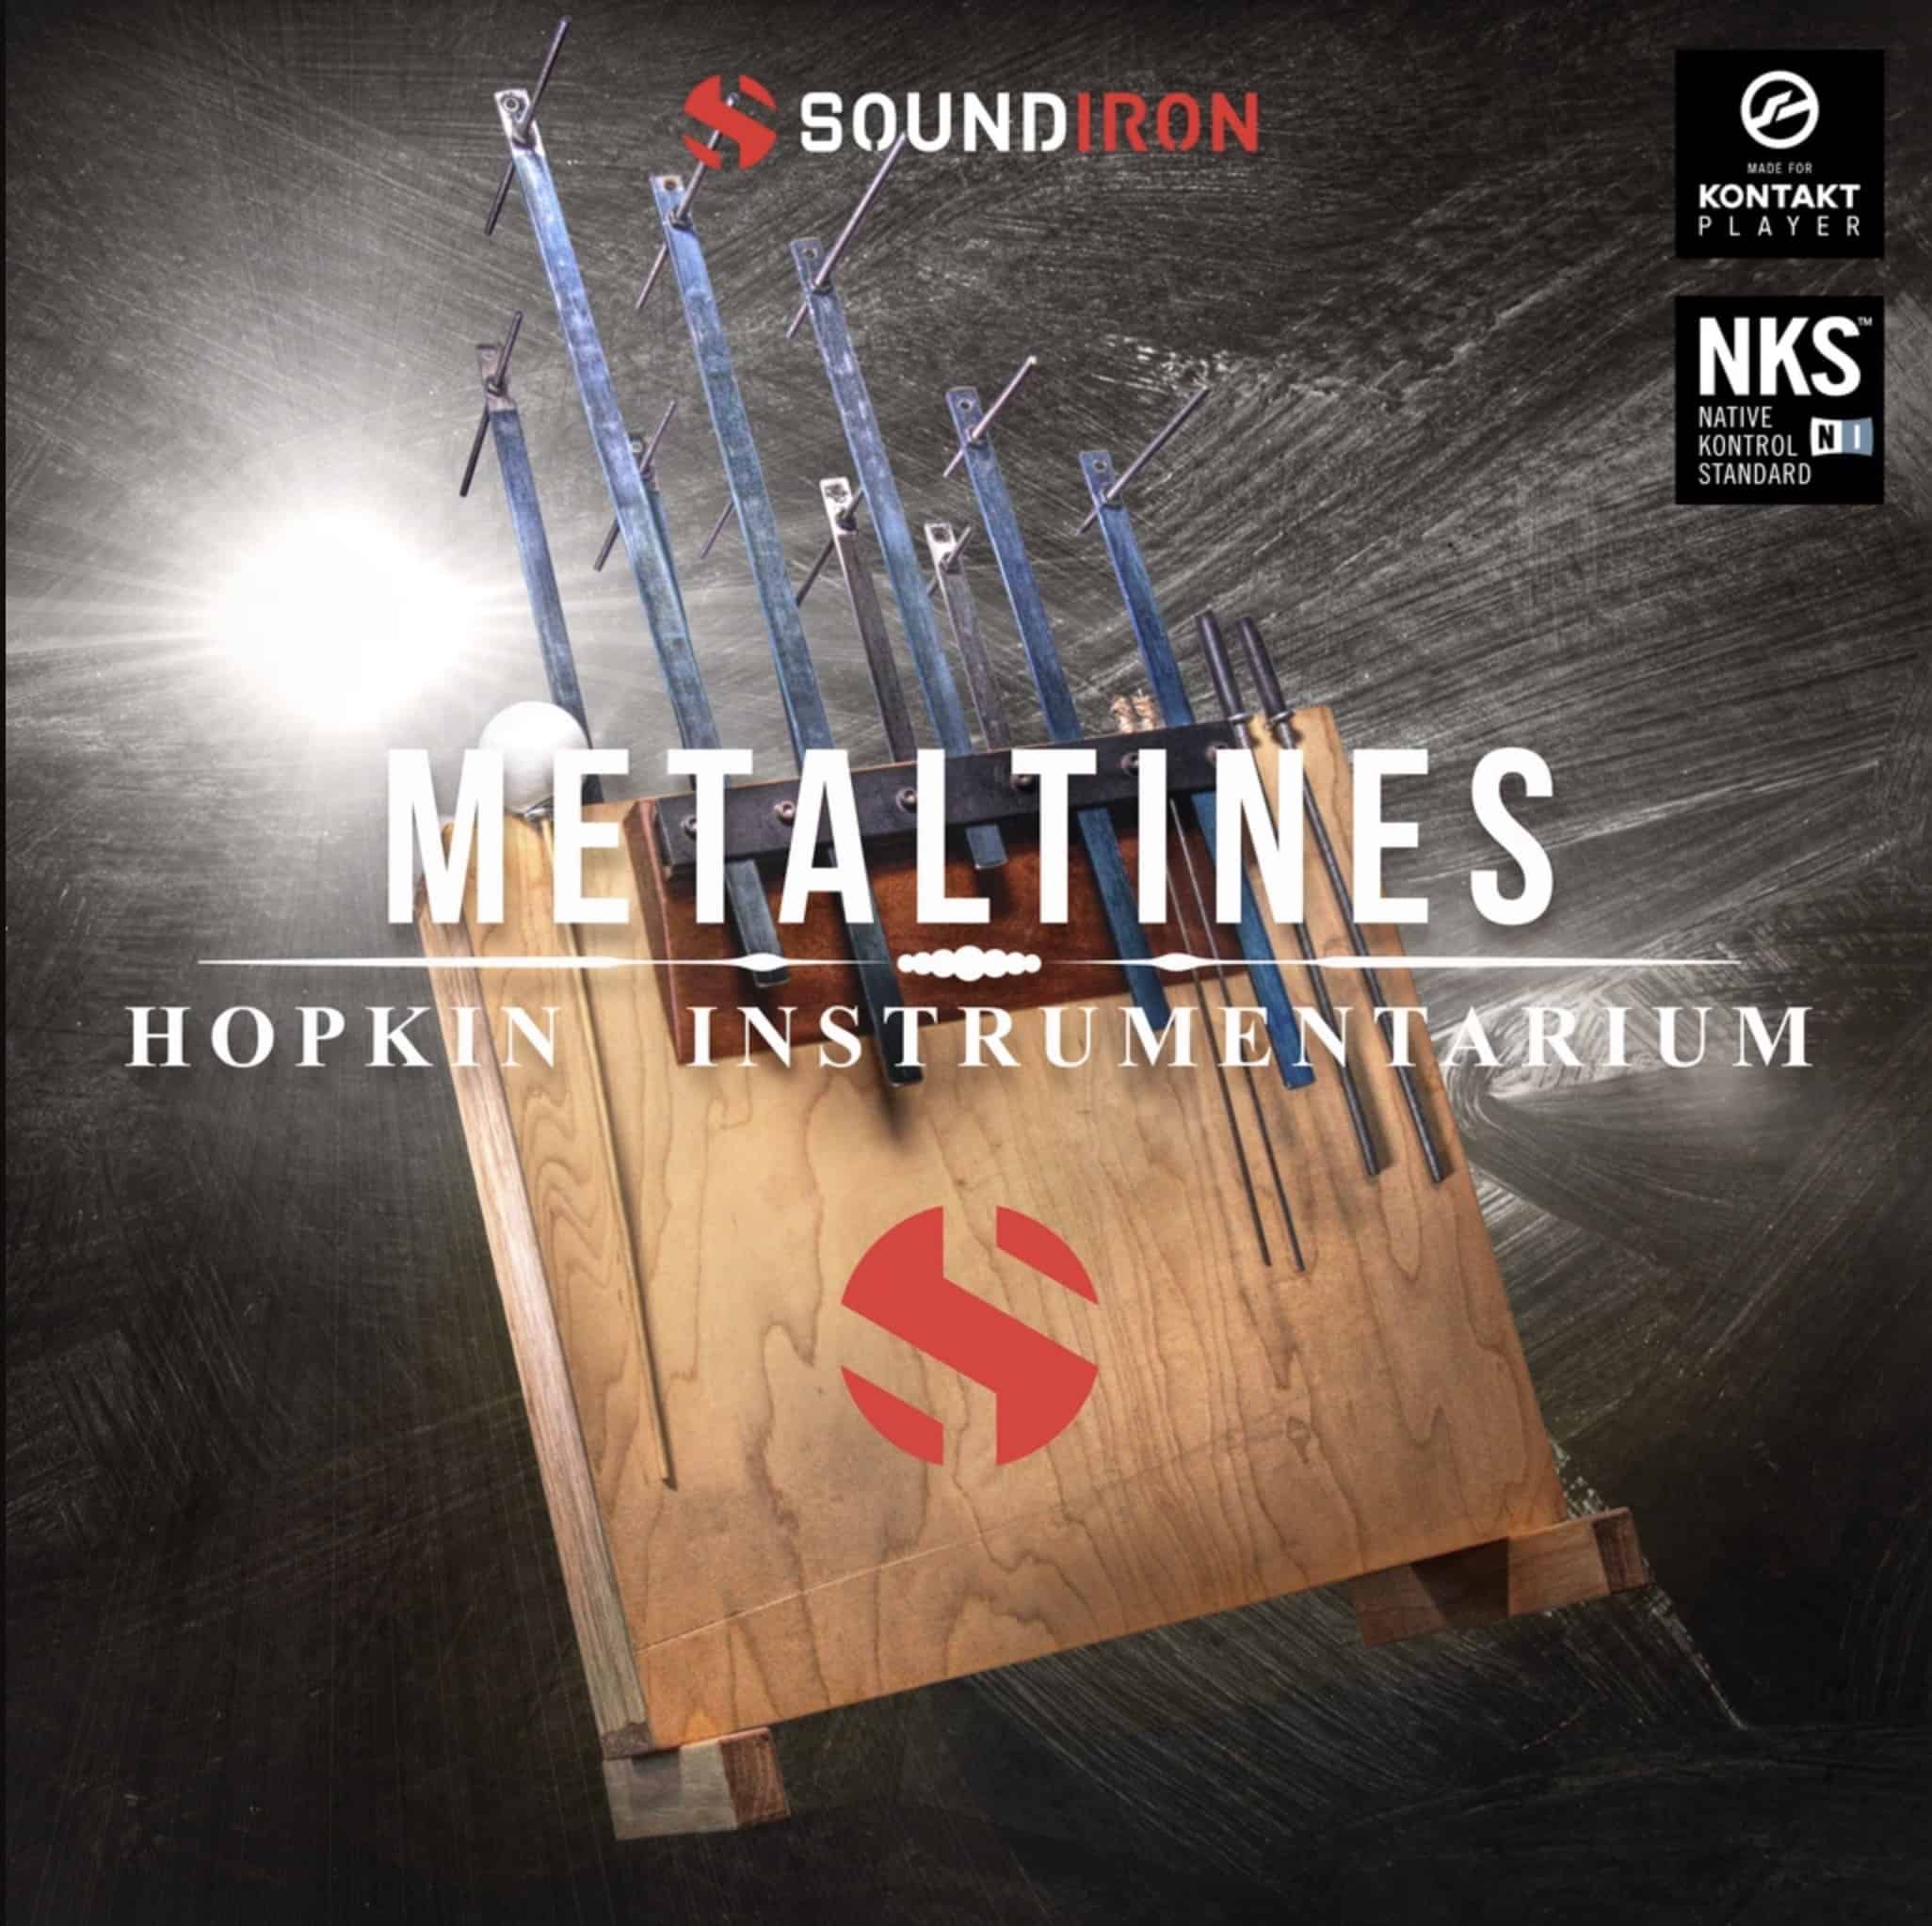 Hopkin Instrumentarium Metaltines by SoundIron